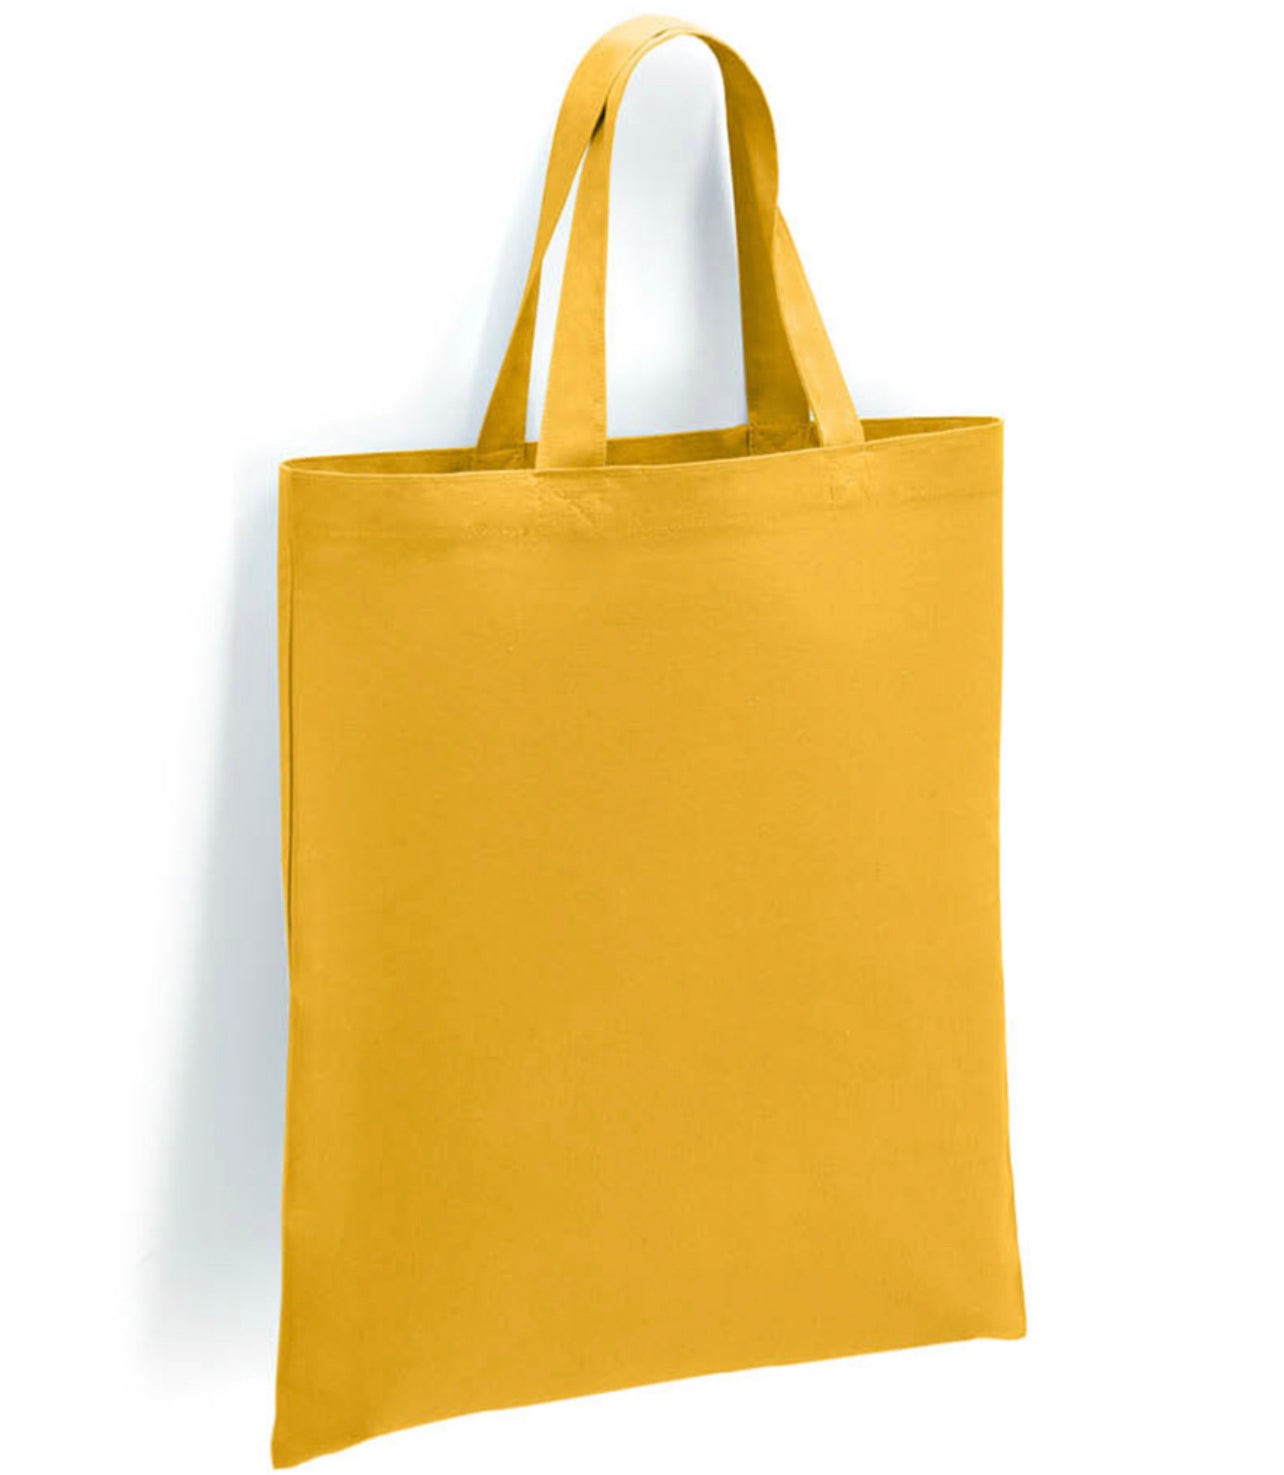 Spring/Summer Tote Bag